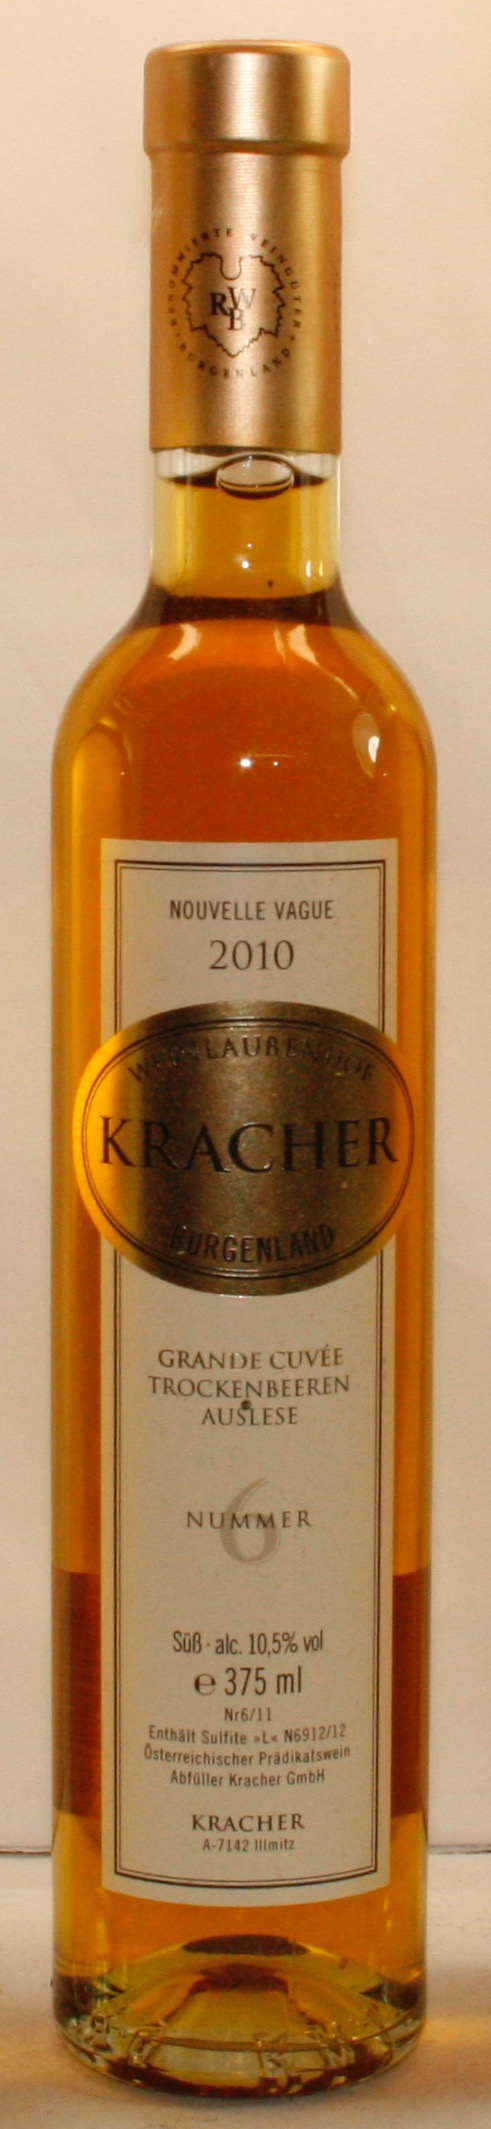 Kracher Nr.6. Grande Cuvée Trockenbeerenauslese Nouvelle Vague, Austria, Shop